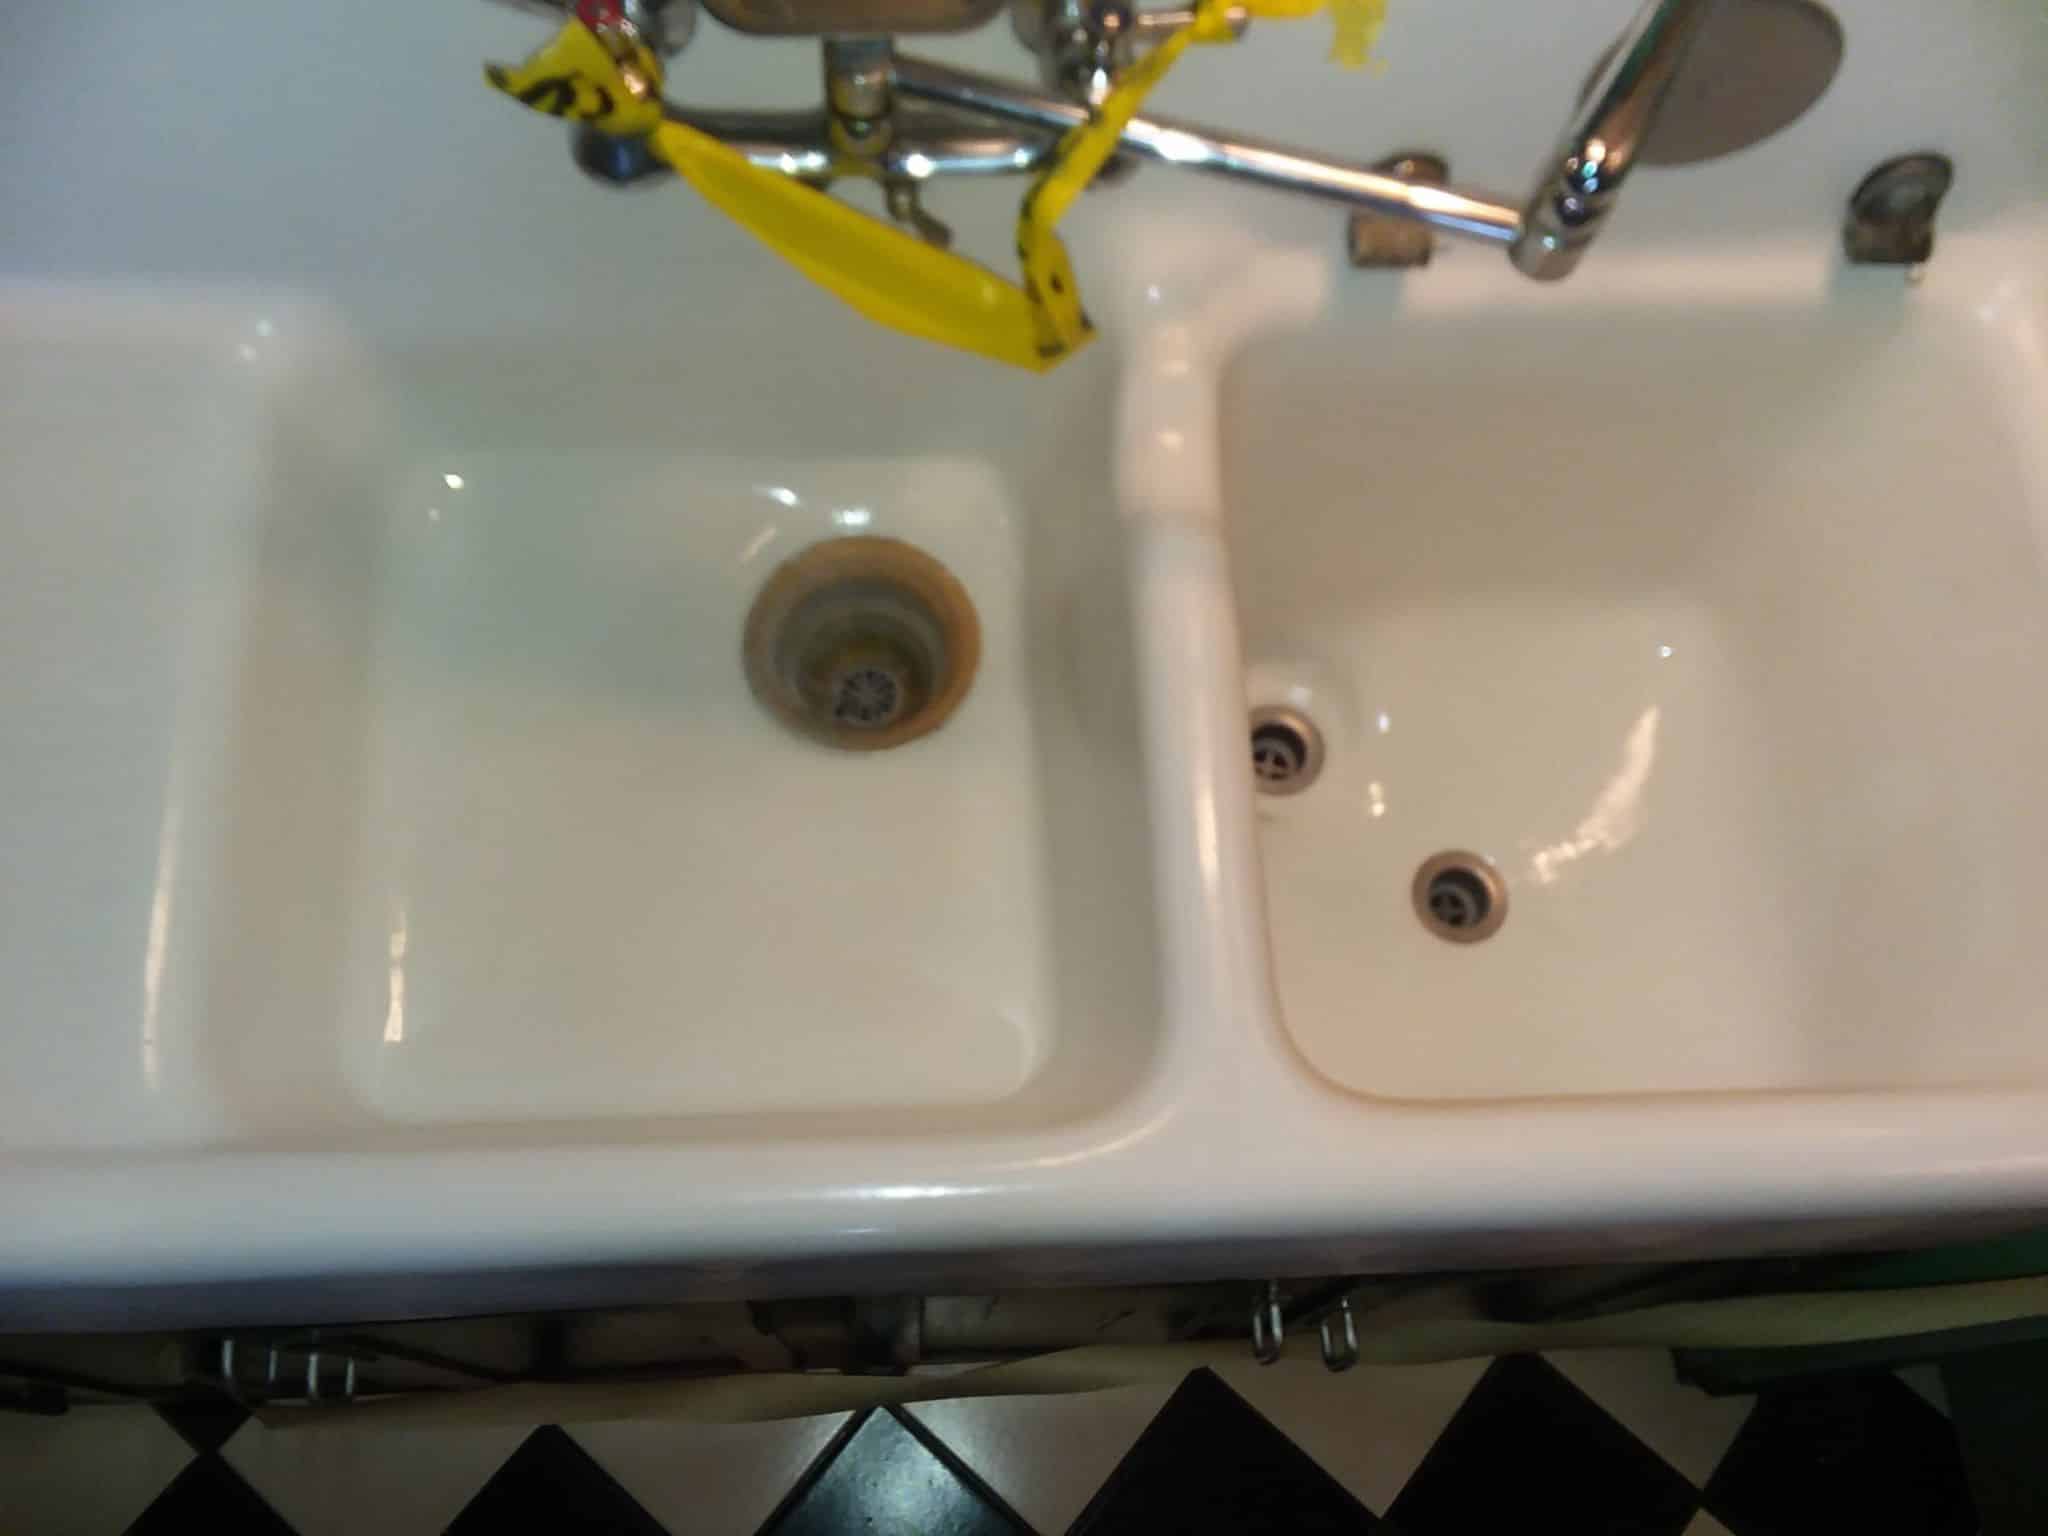 Born-again kitchen sink